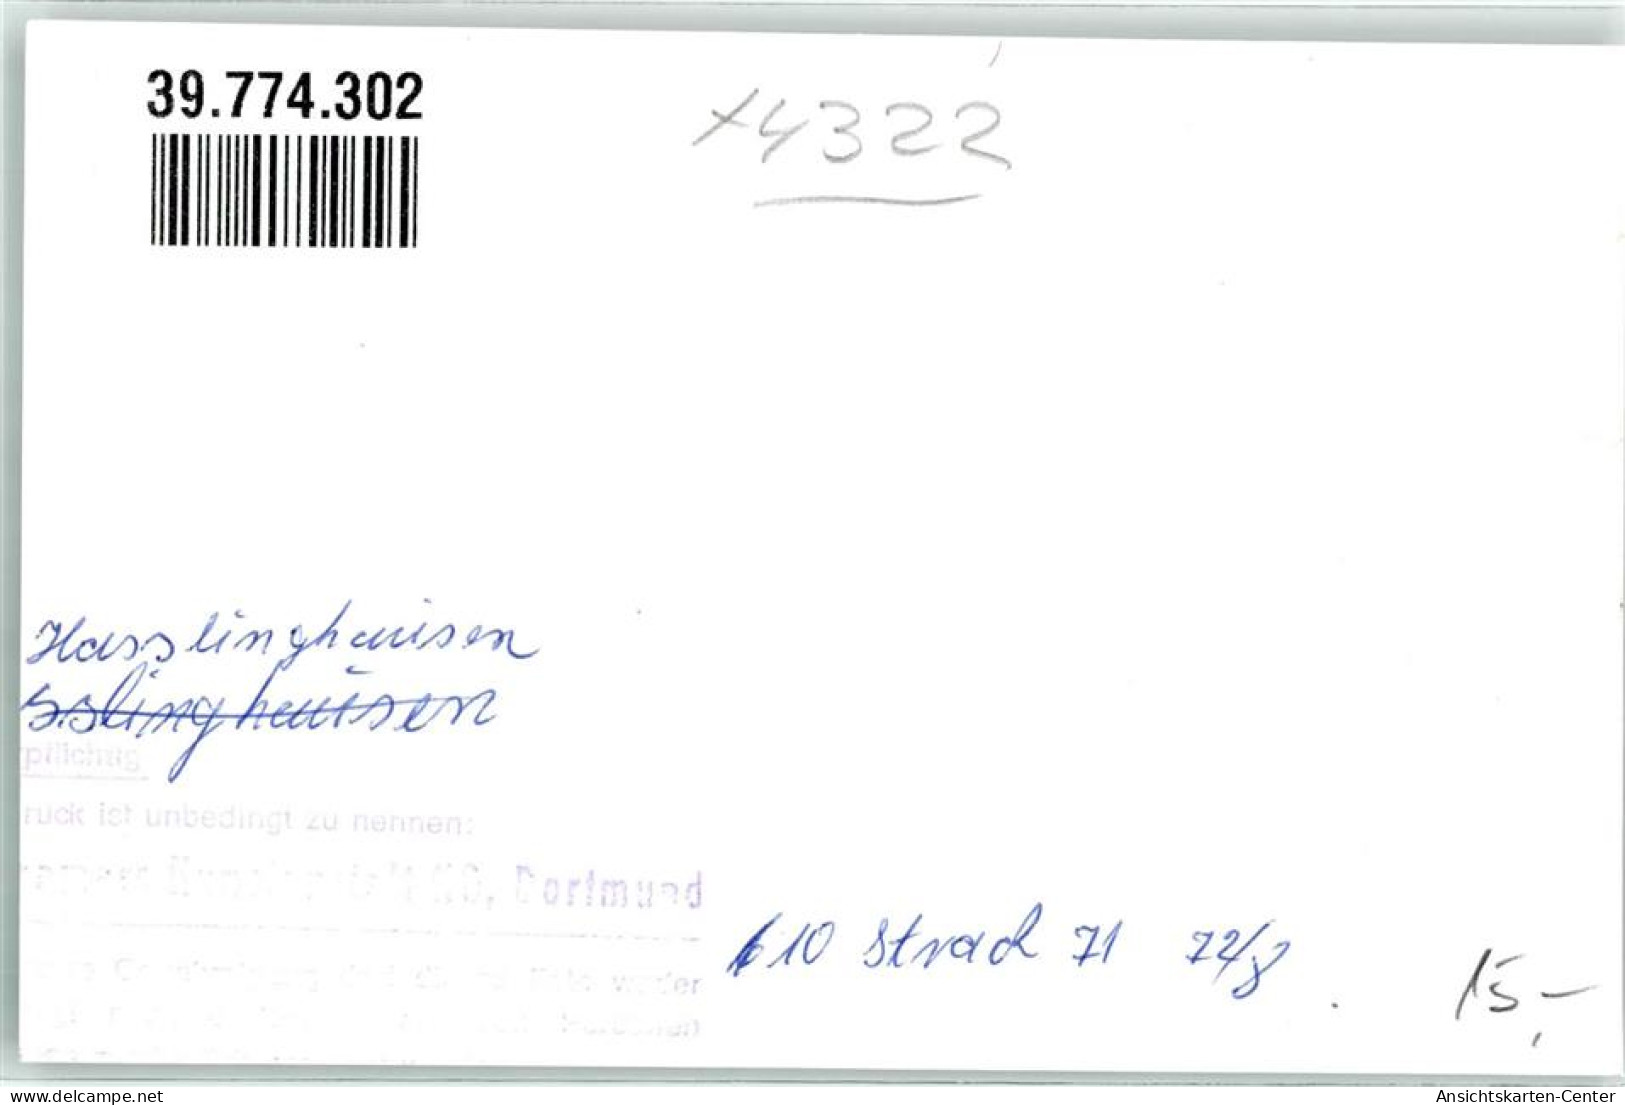 39774302 - Hasslinghausen - Sprockhoevel